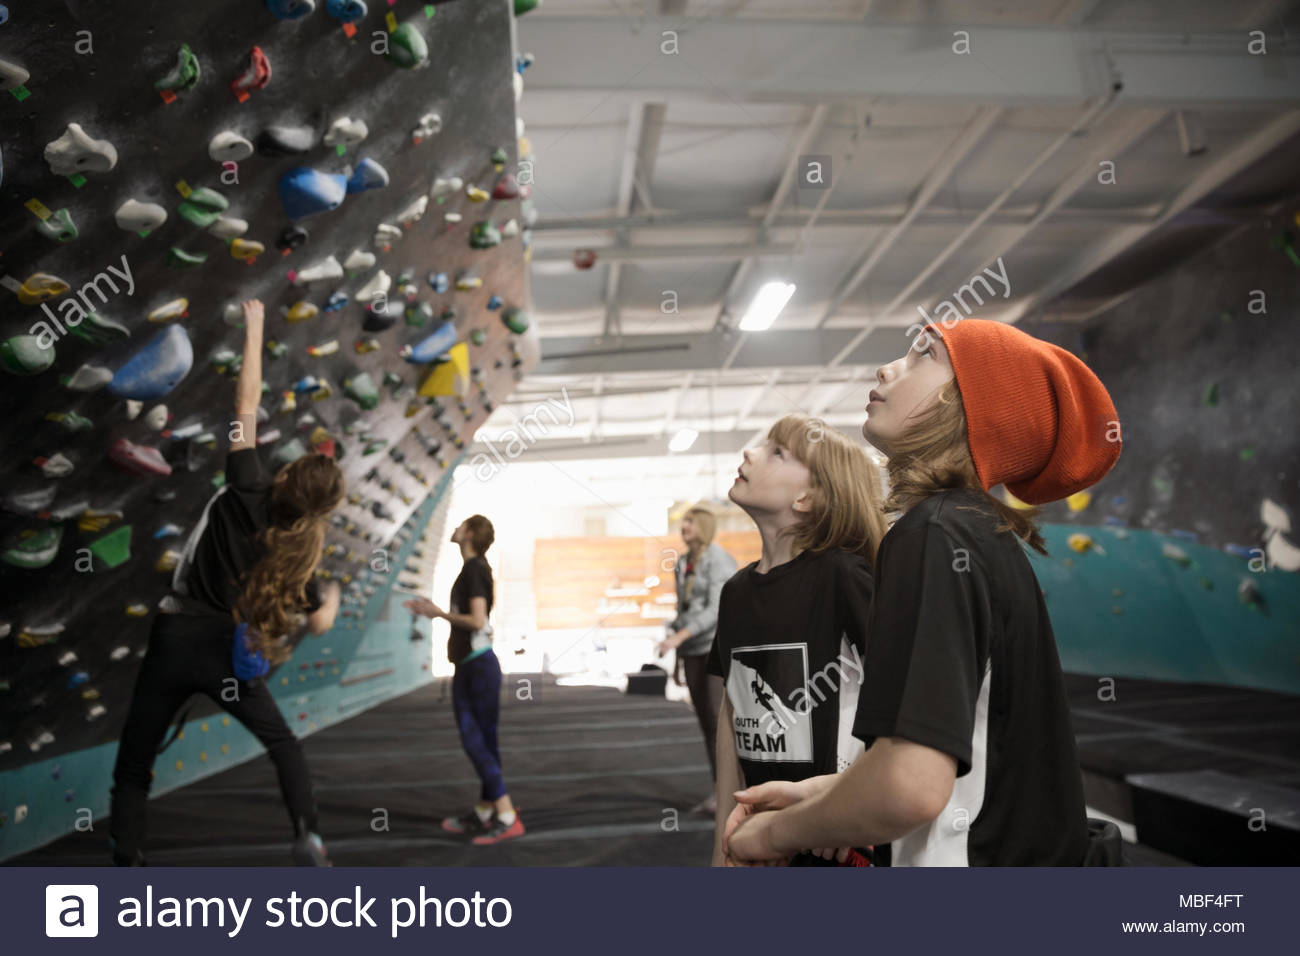 Curioso chico y chica escaladores mirando hacia arriba en la pared de escalada en el gimnasio de escalada Foto de stock